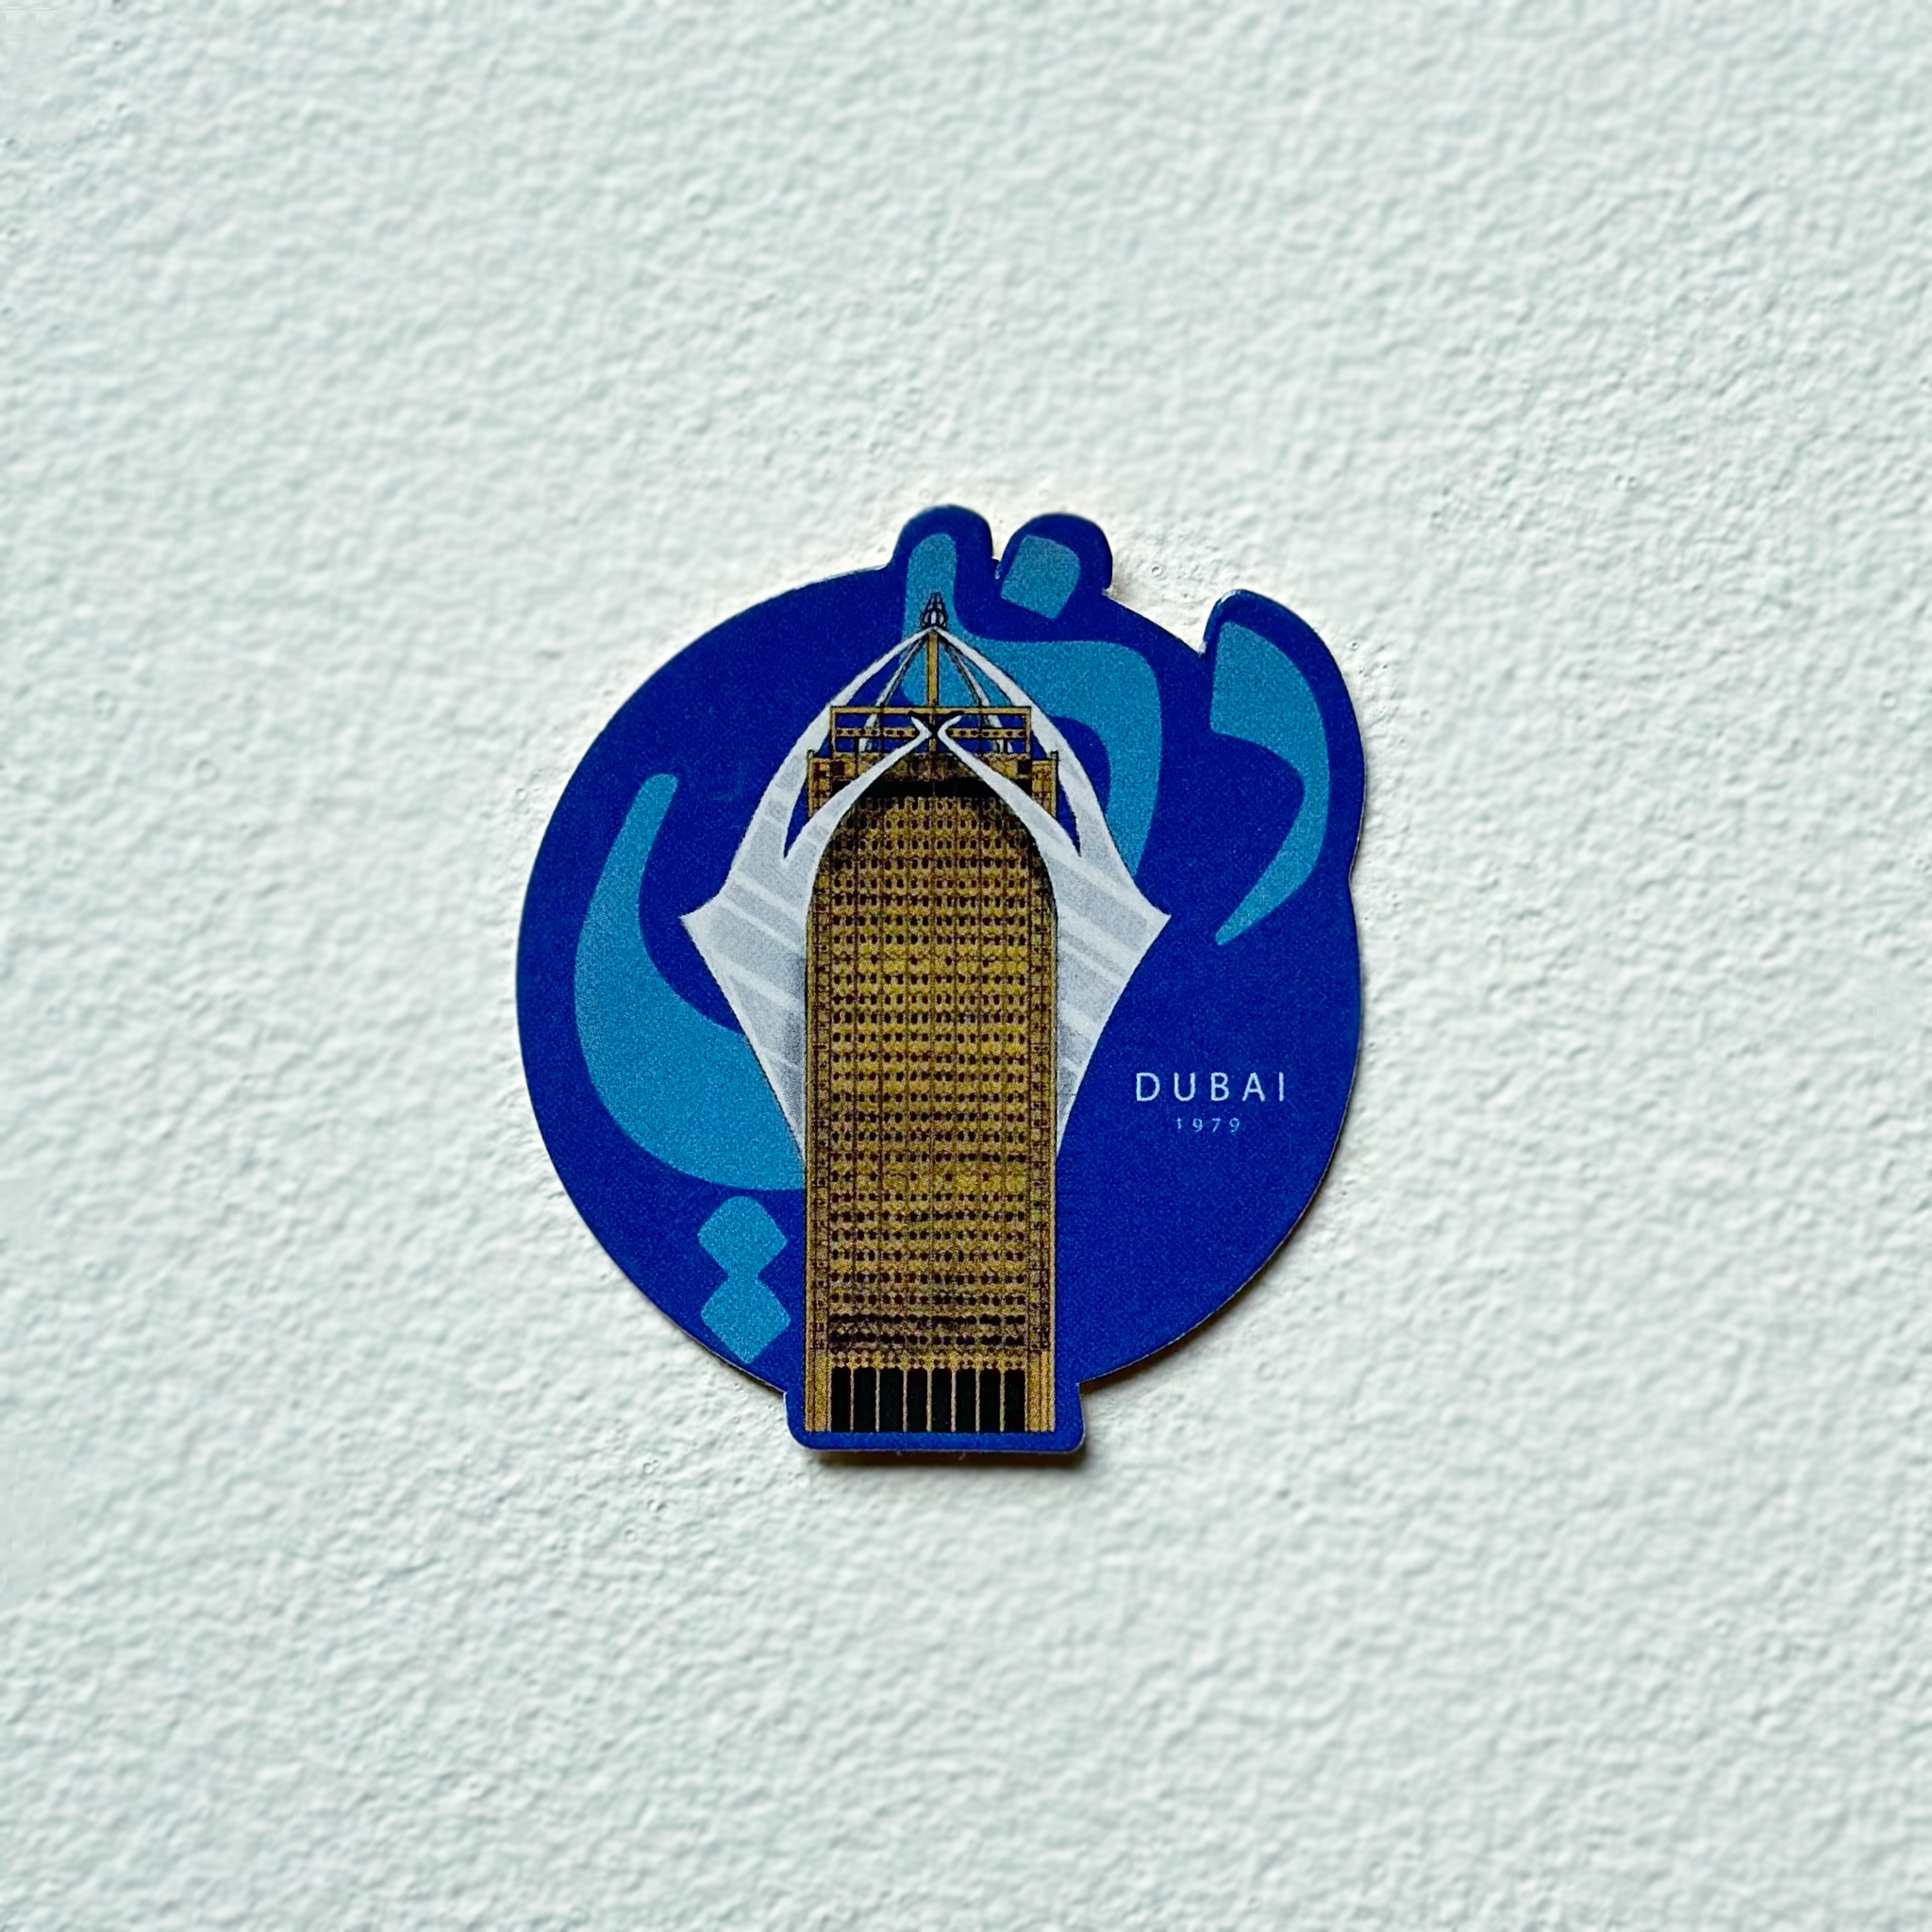 Dubai Stickers | by Ali Mrad